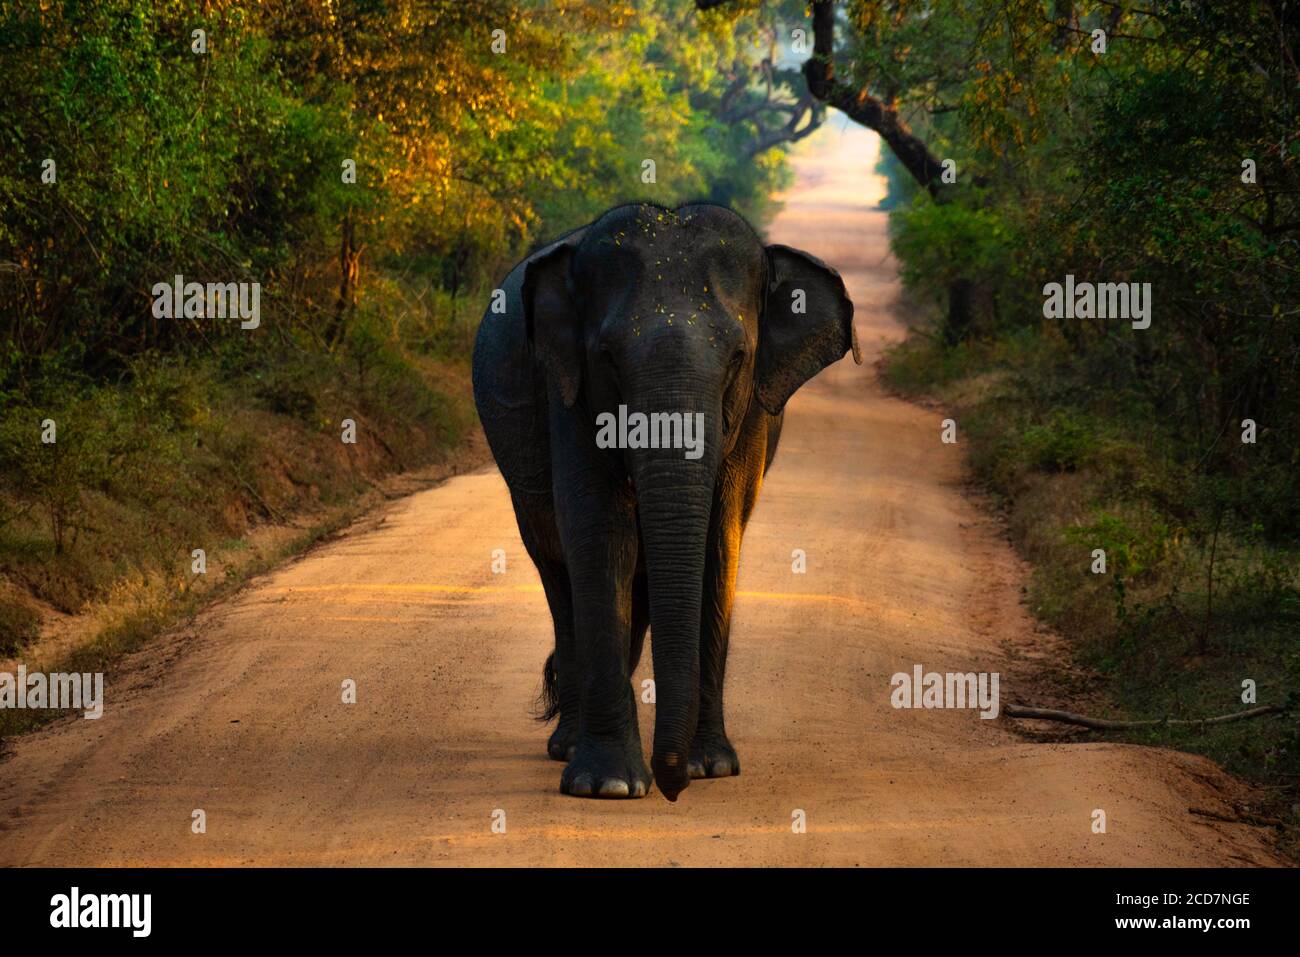 Femelle éléphant indien marchant dans la lumière chaude du matin sur une route de terre dans la jungle du parc national de Kudulla vers la caméra. Éléphant de Sri Lanka Banque D'Images